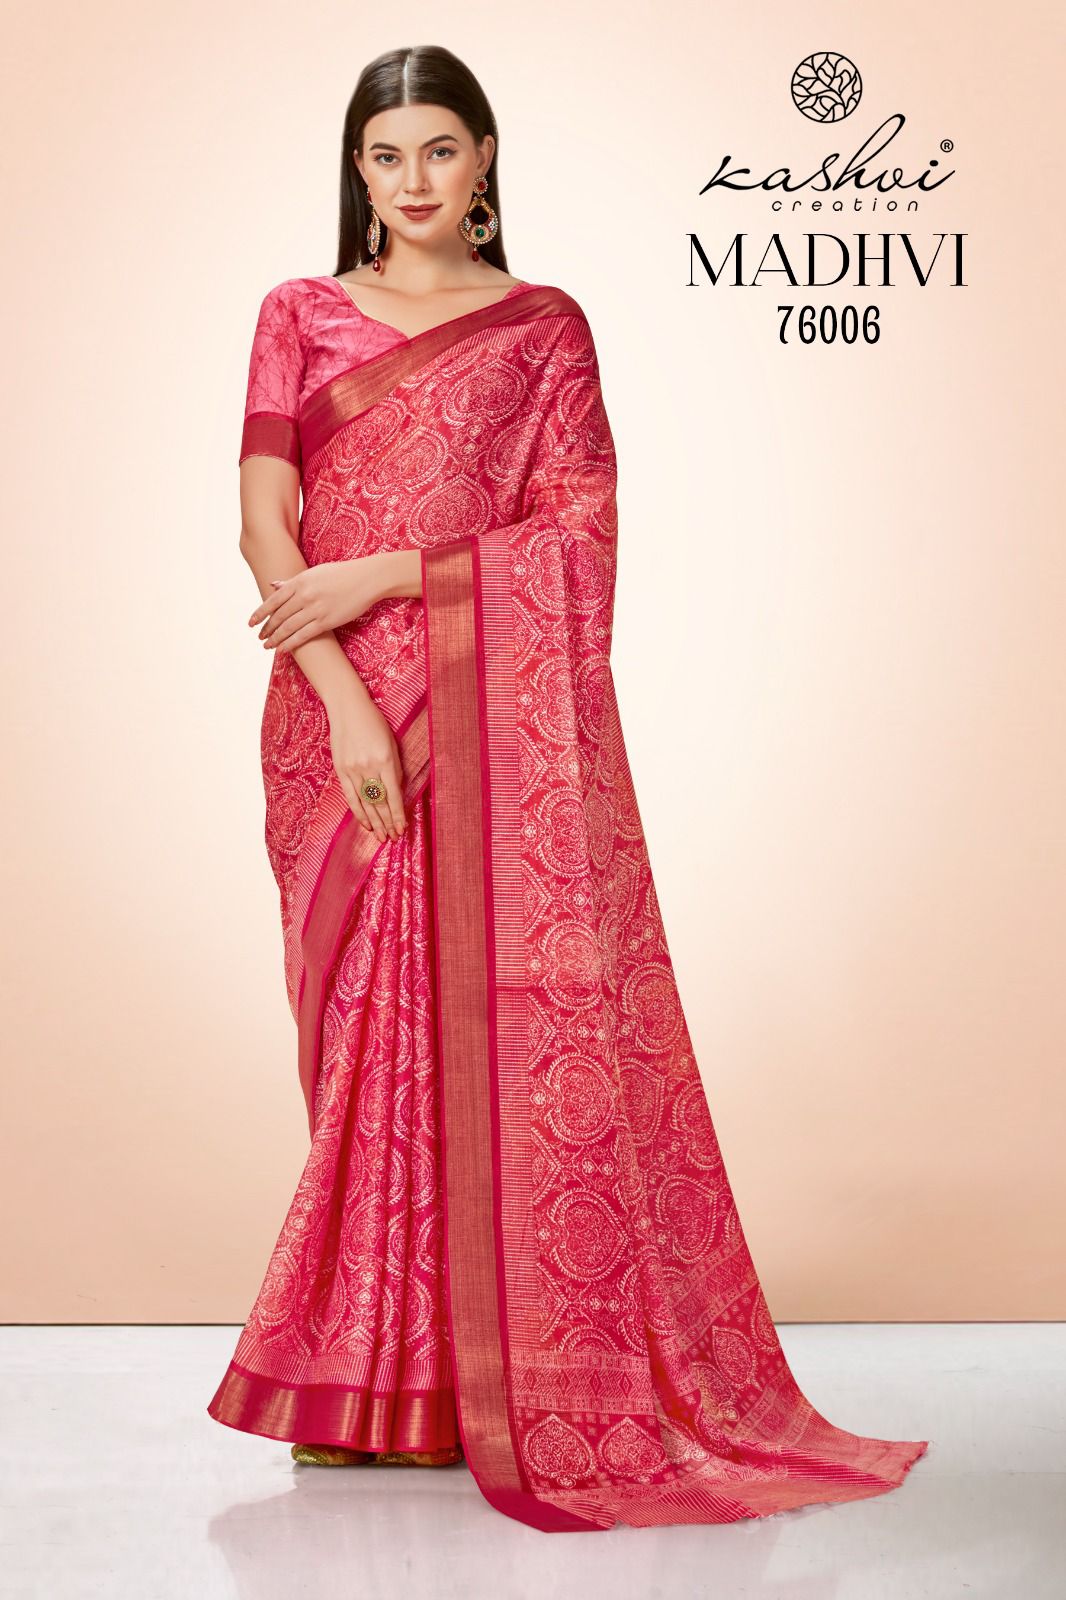 lt saree kashvi creation madhvi cotton silk innovative print saree catalog